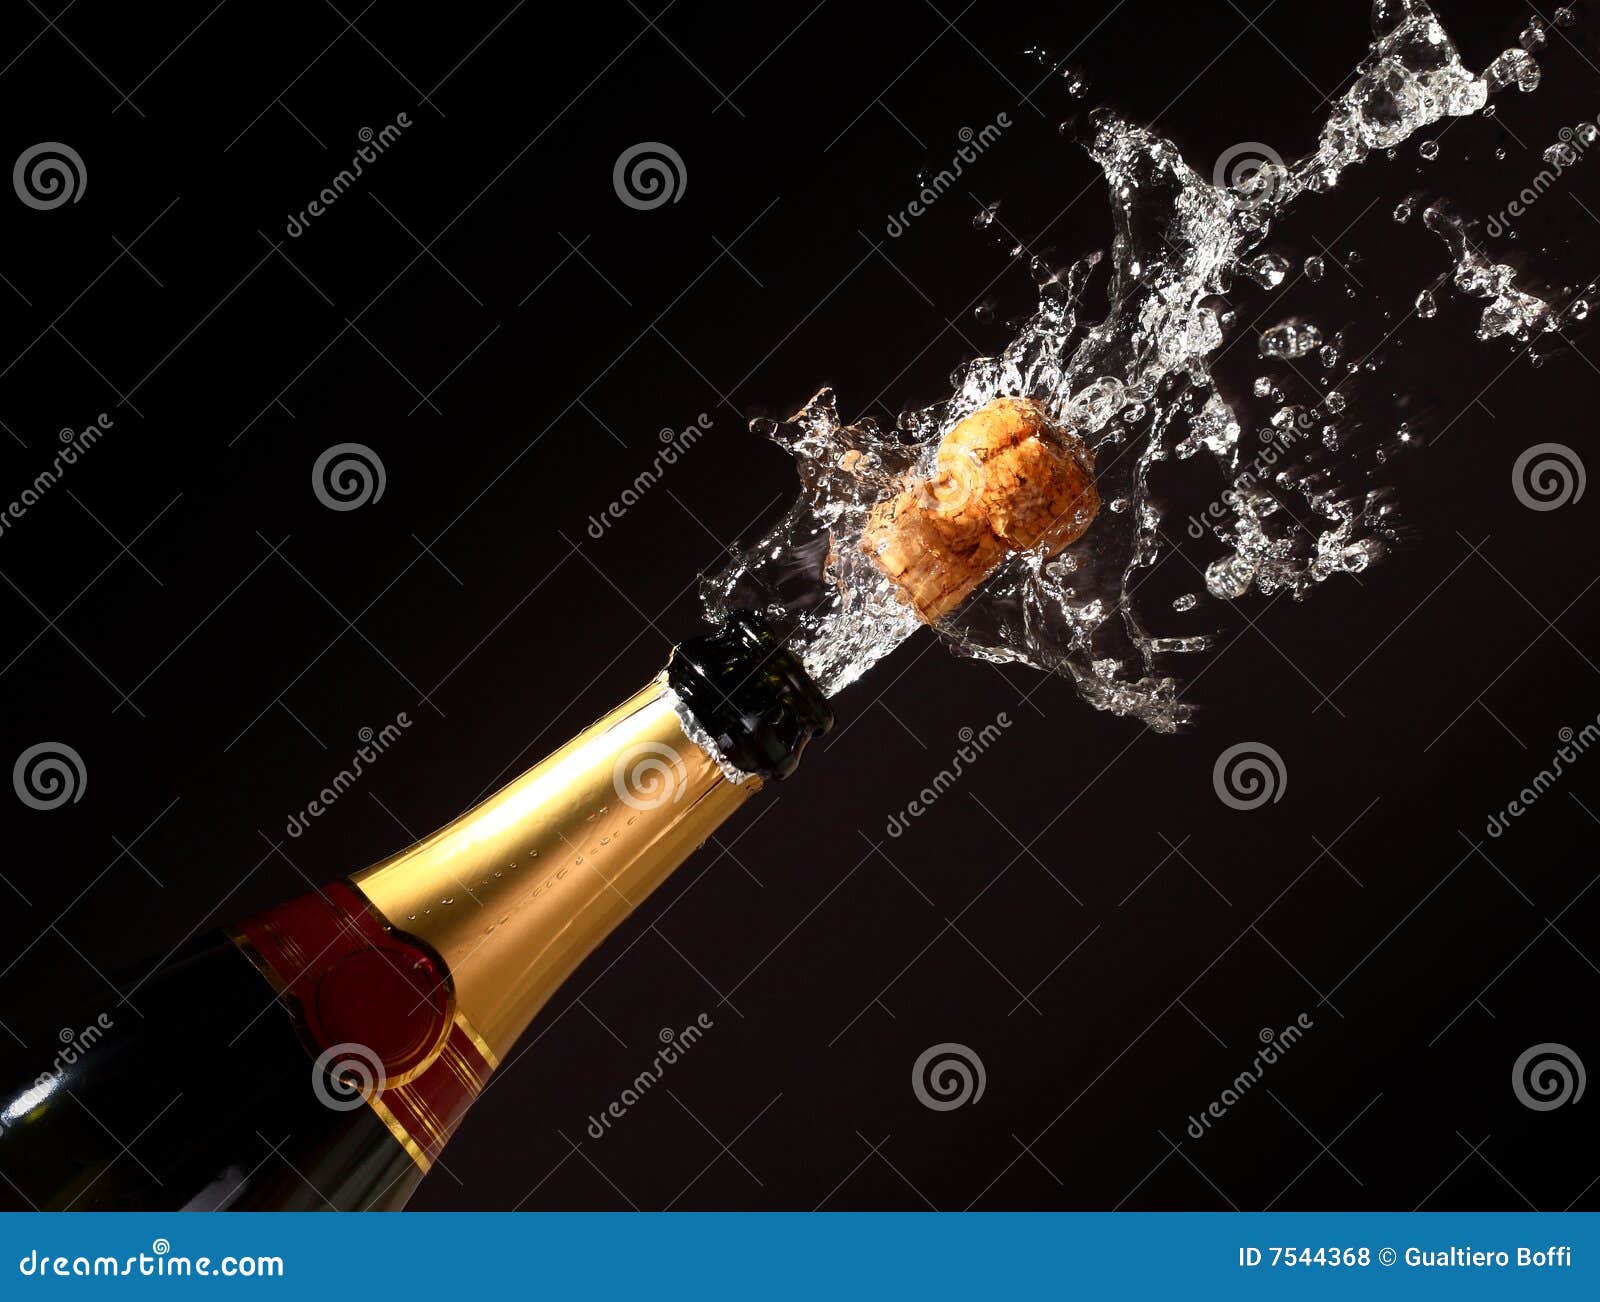 champagne bottle eruption